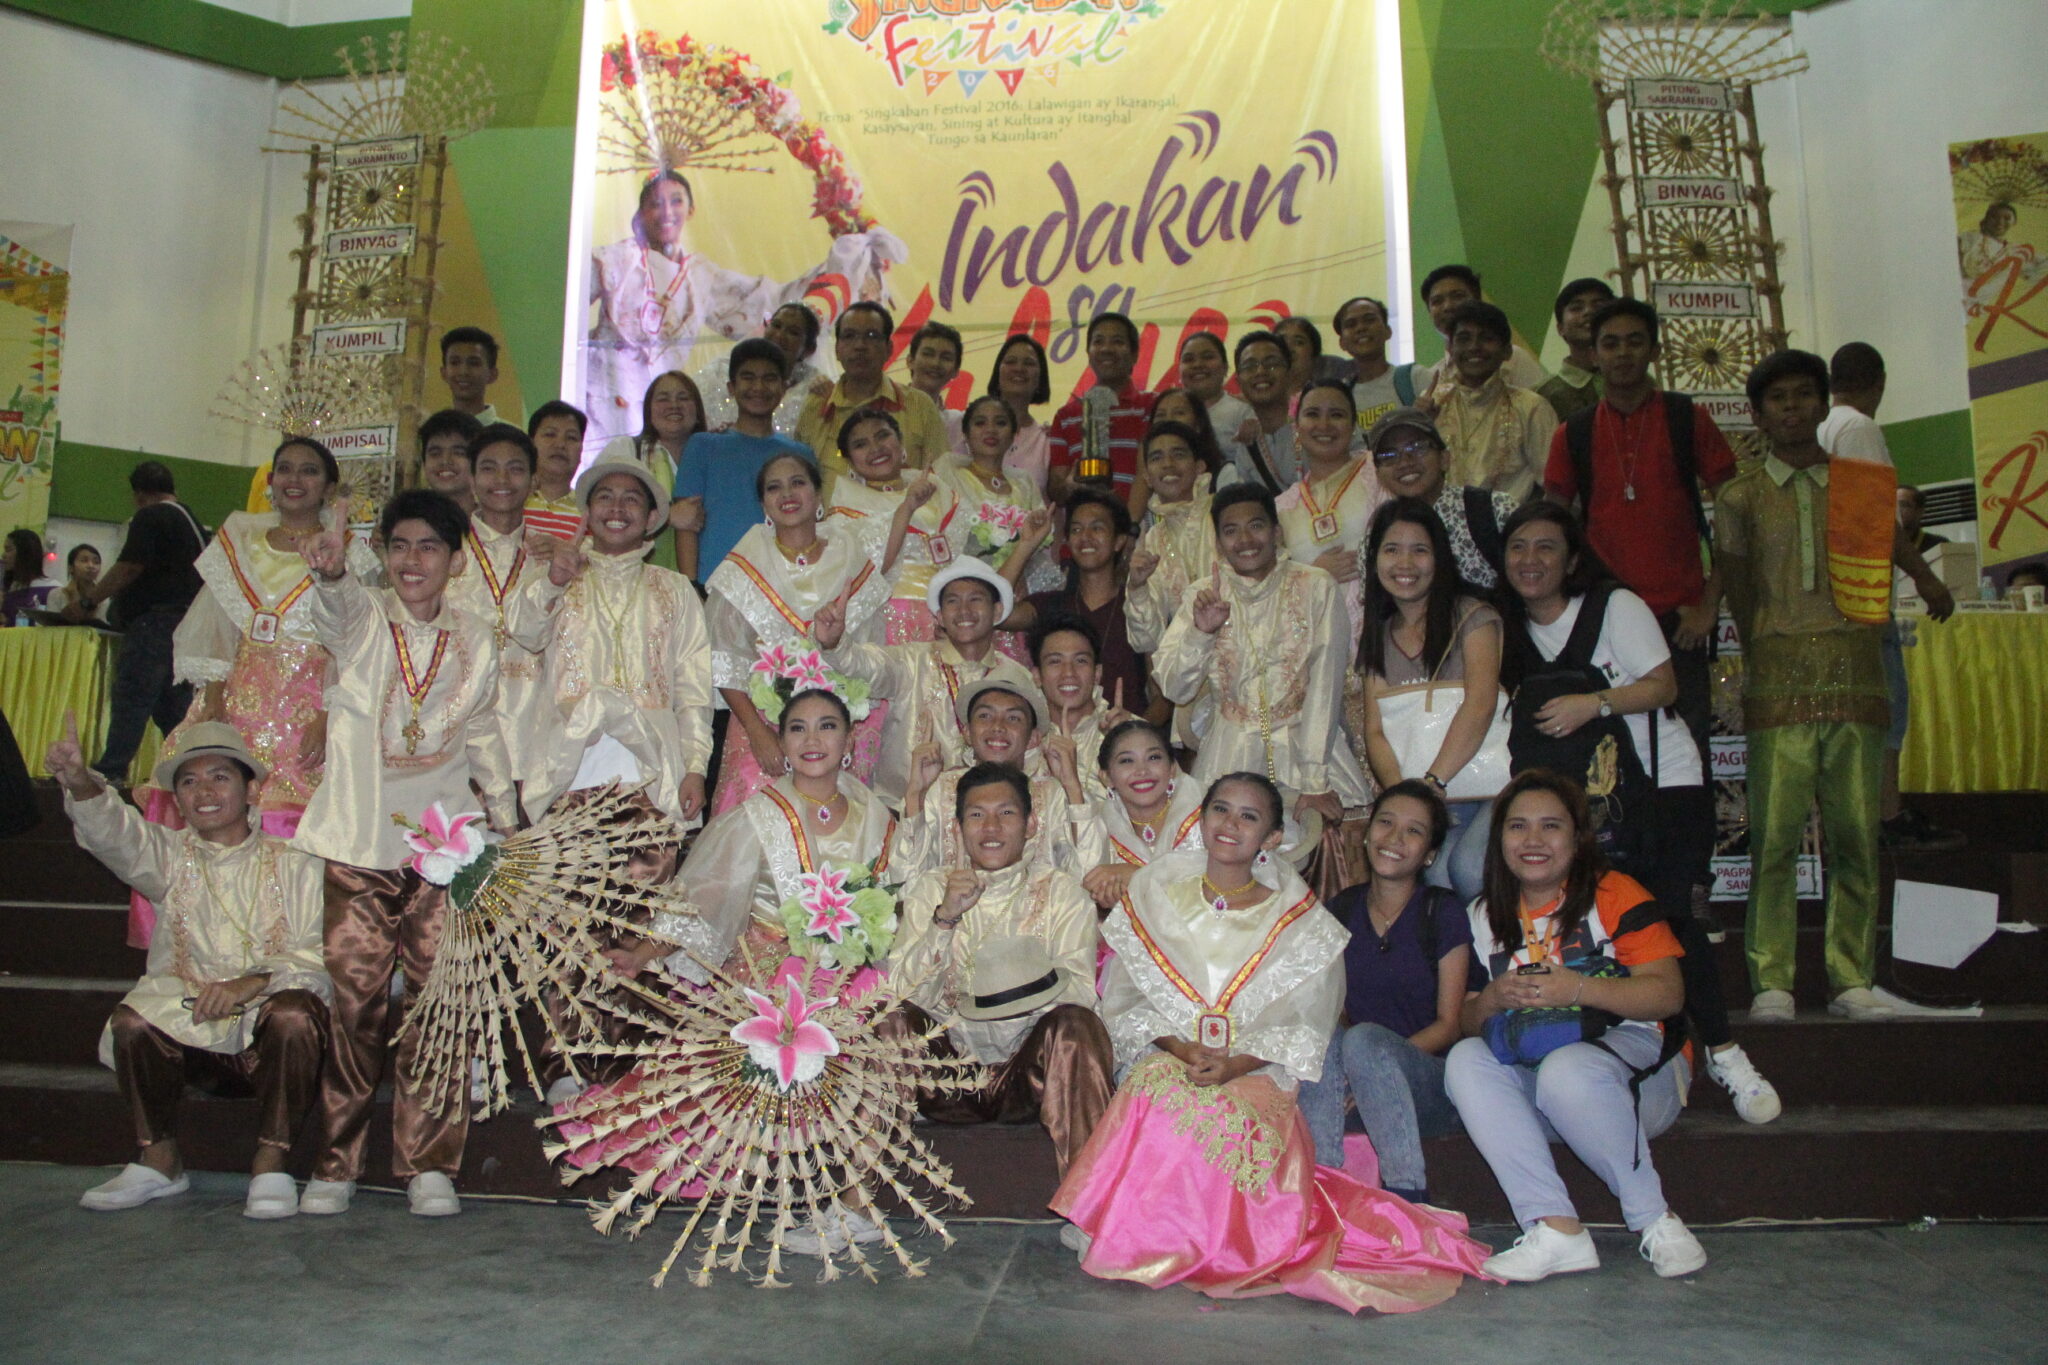 Hiyas ng Hagonoy Folkloric Dance Group wins big in Indakan sa Kalye